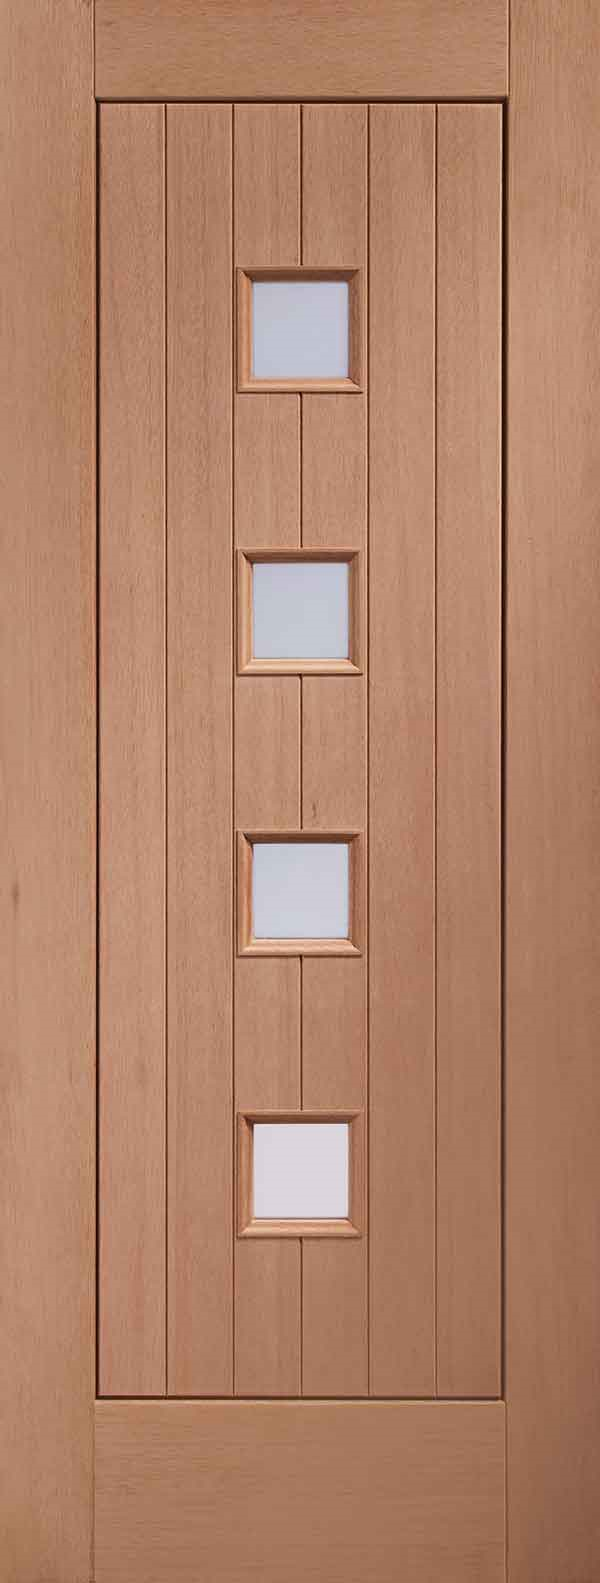 Siena Obscure Glazed Hardwood External Door